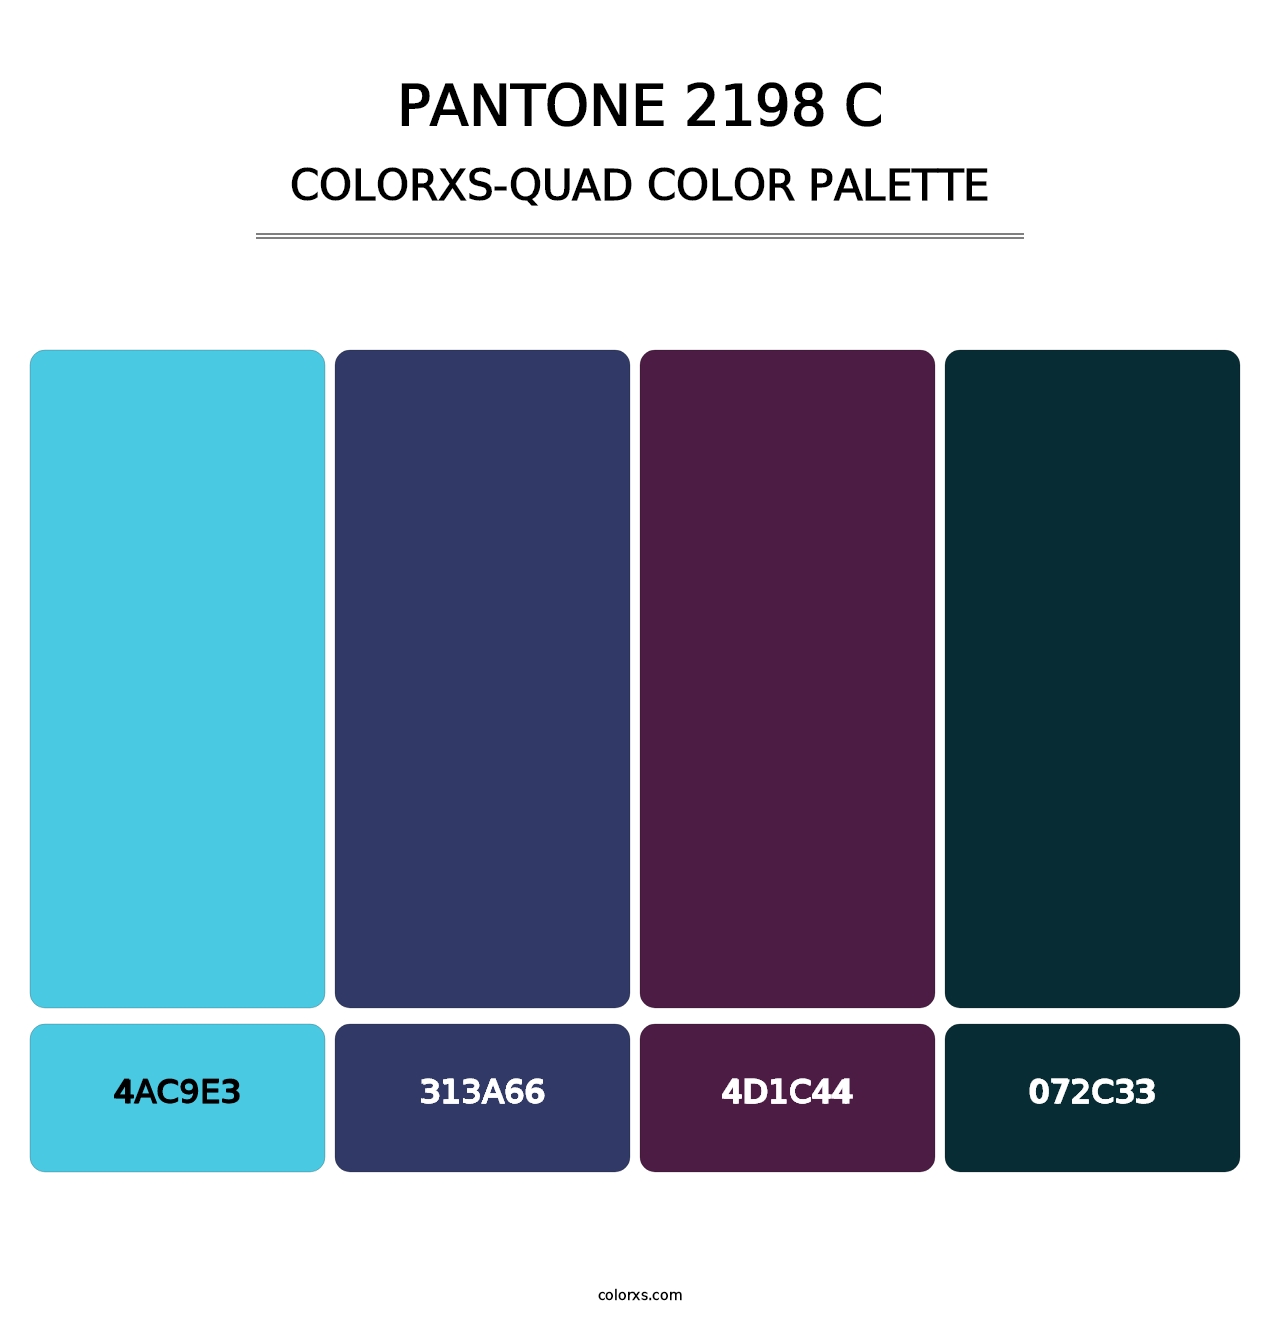 PANTONE 2198 C - Colorxs Quad Palette